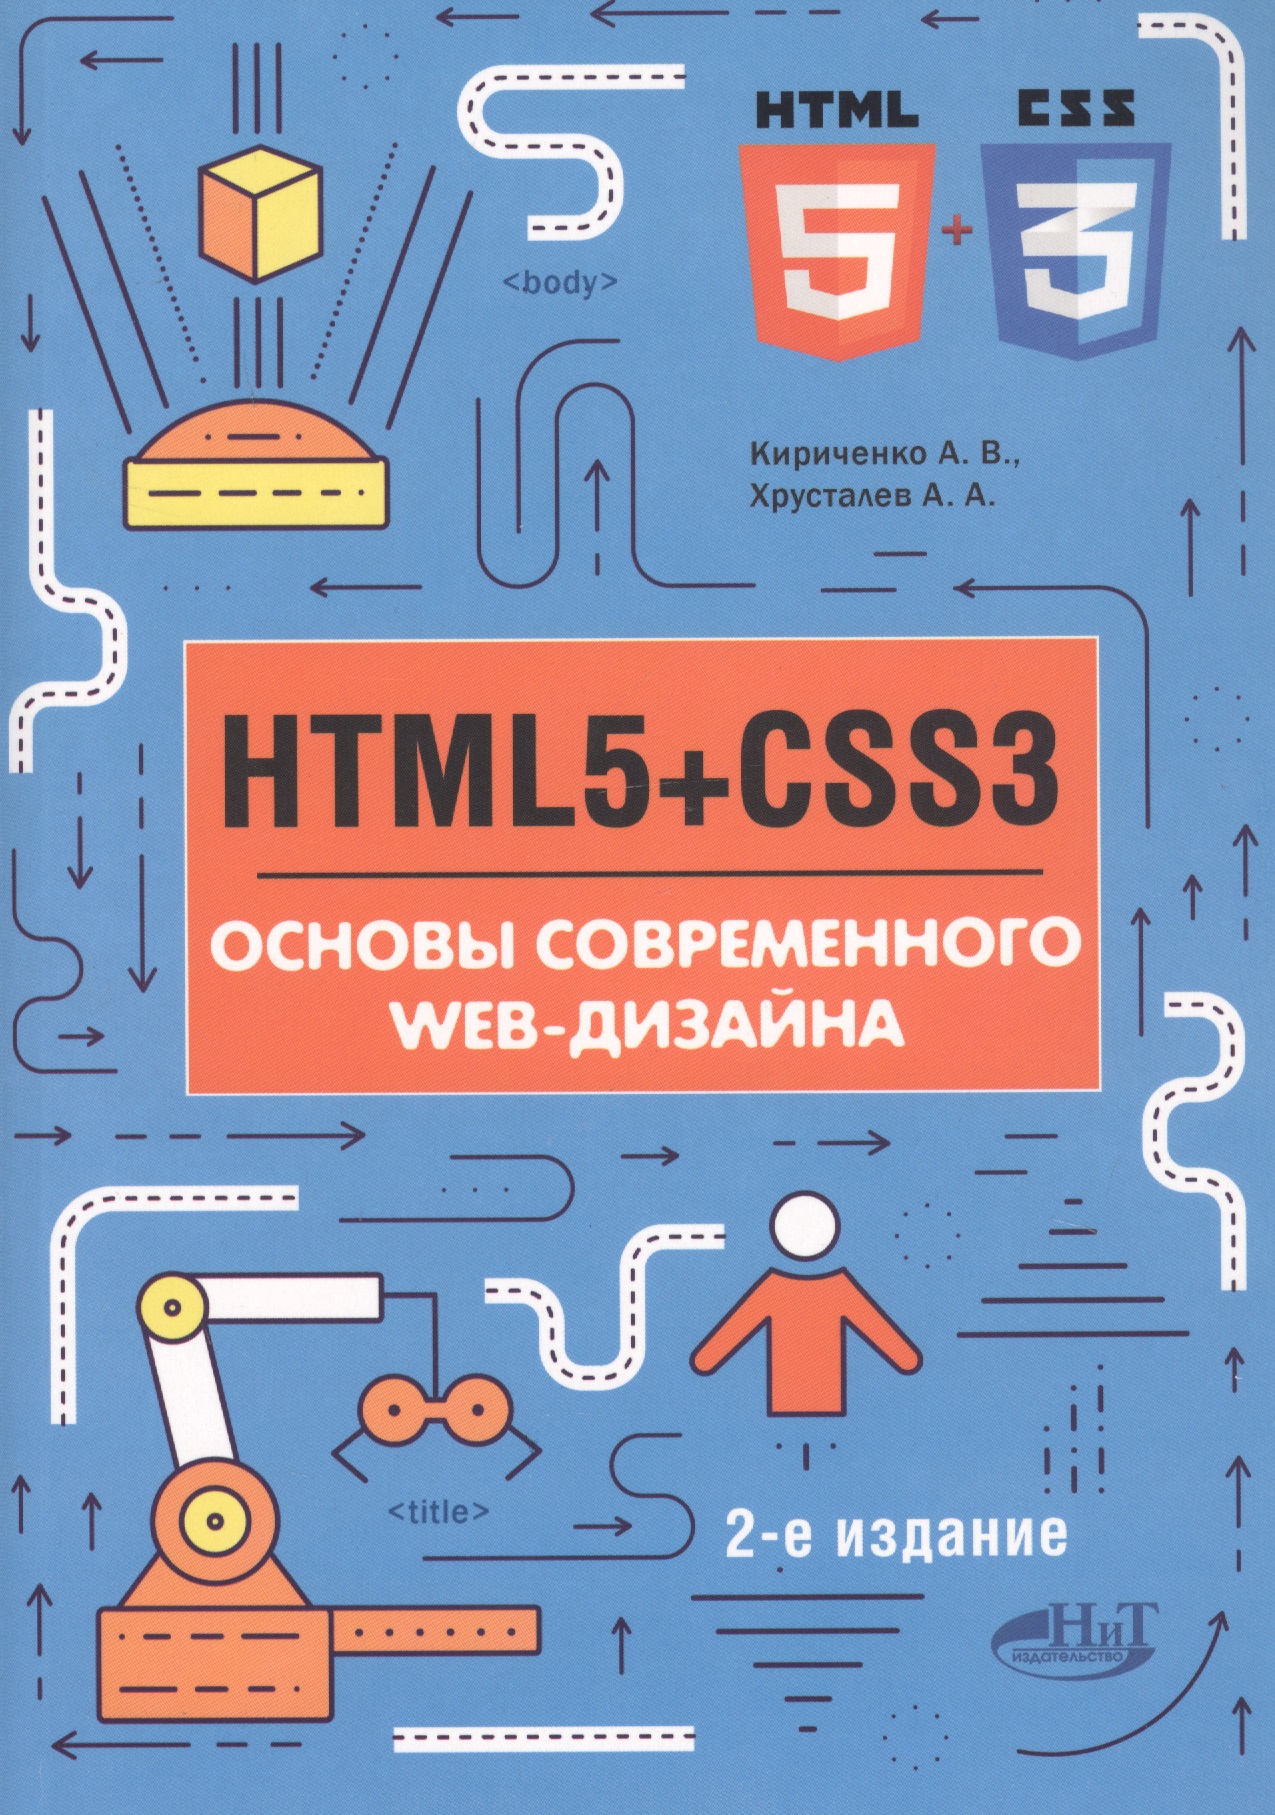 никсон робин html5 и css3 мастер класс Ковпак Дмитрий Викторович HTML5+CSS3. Основы современного WEB-дизайна